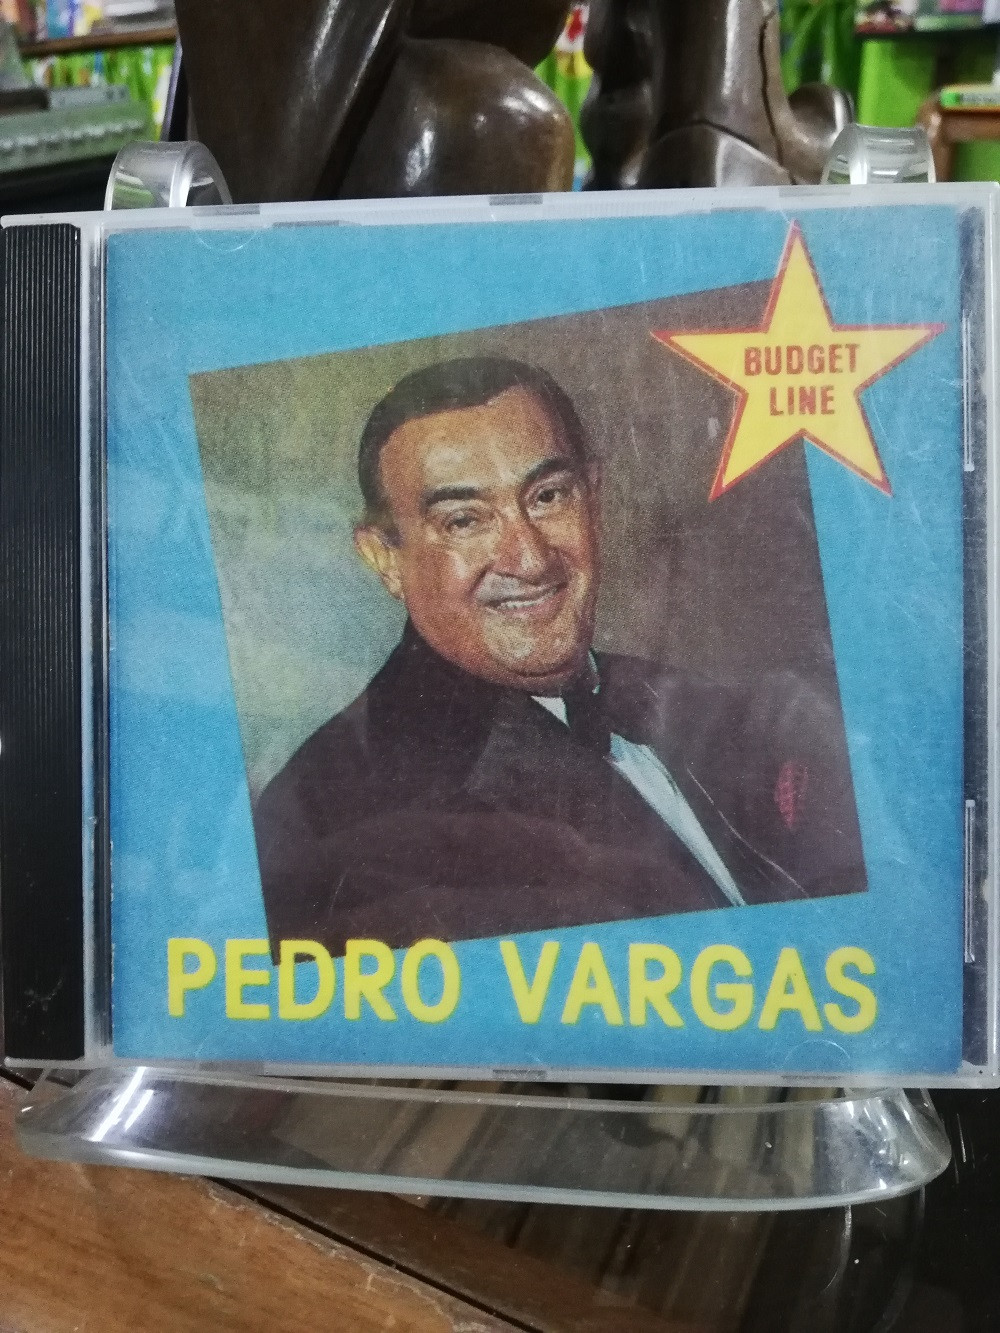 Imagen CD PEDRO VARGAS - PEDRO VARGAS